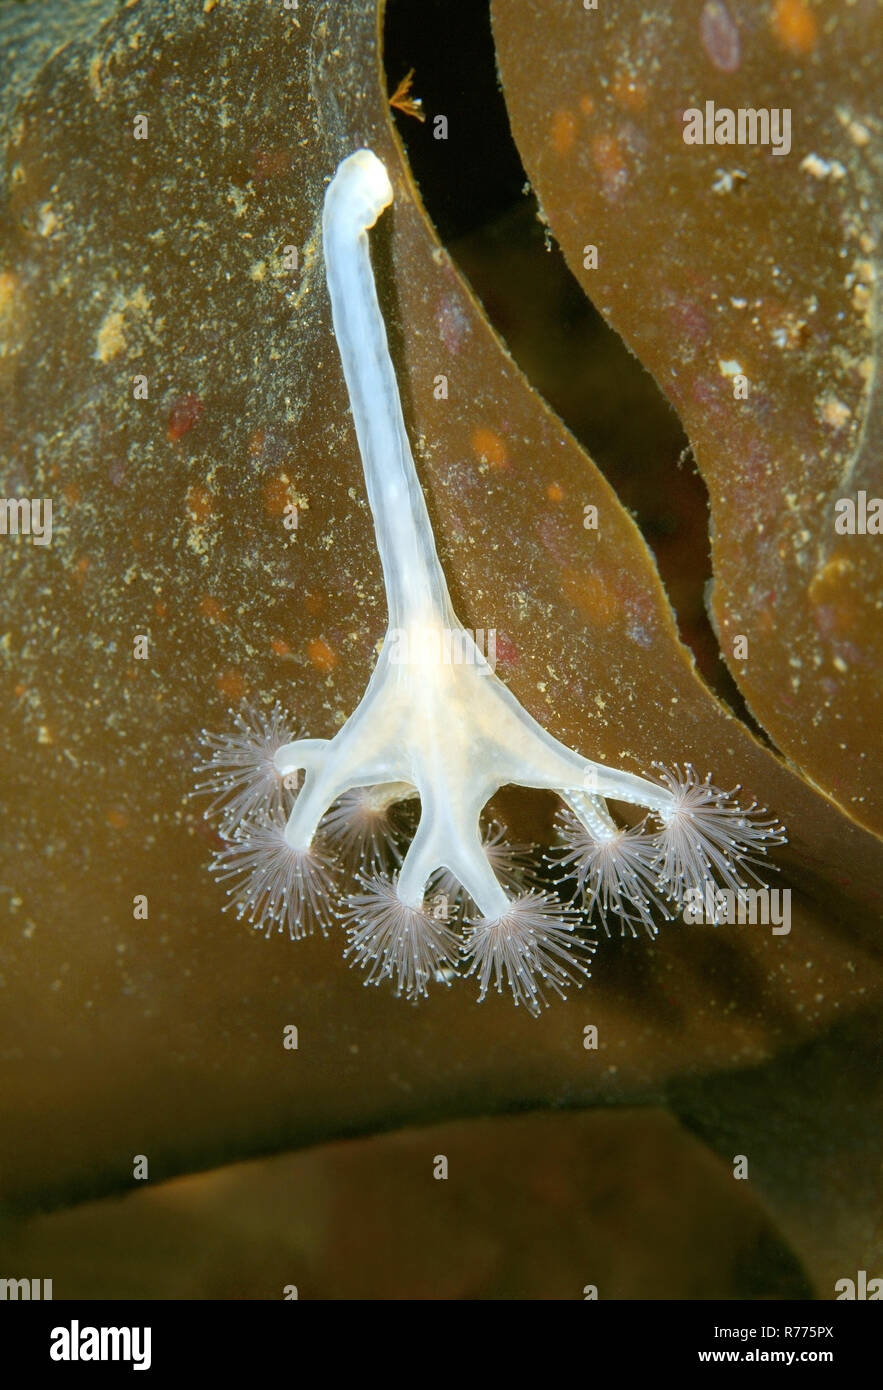 Stalked jellyfish (Lucernaria quadricornis), White Sea, Karelia, Arctic, Russia Stock Photo